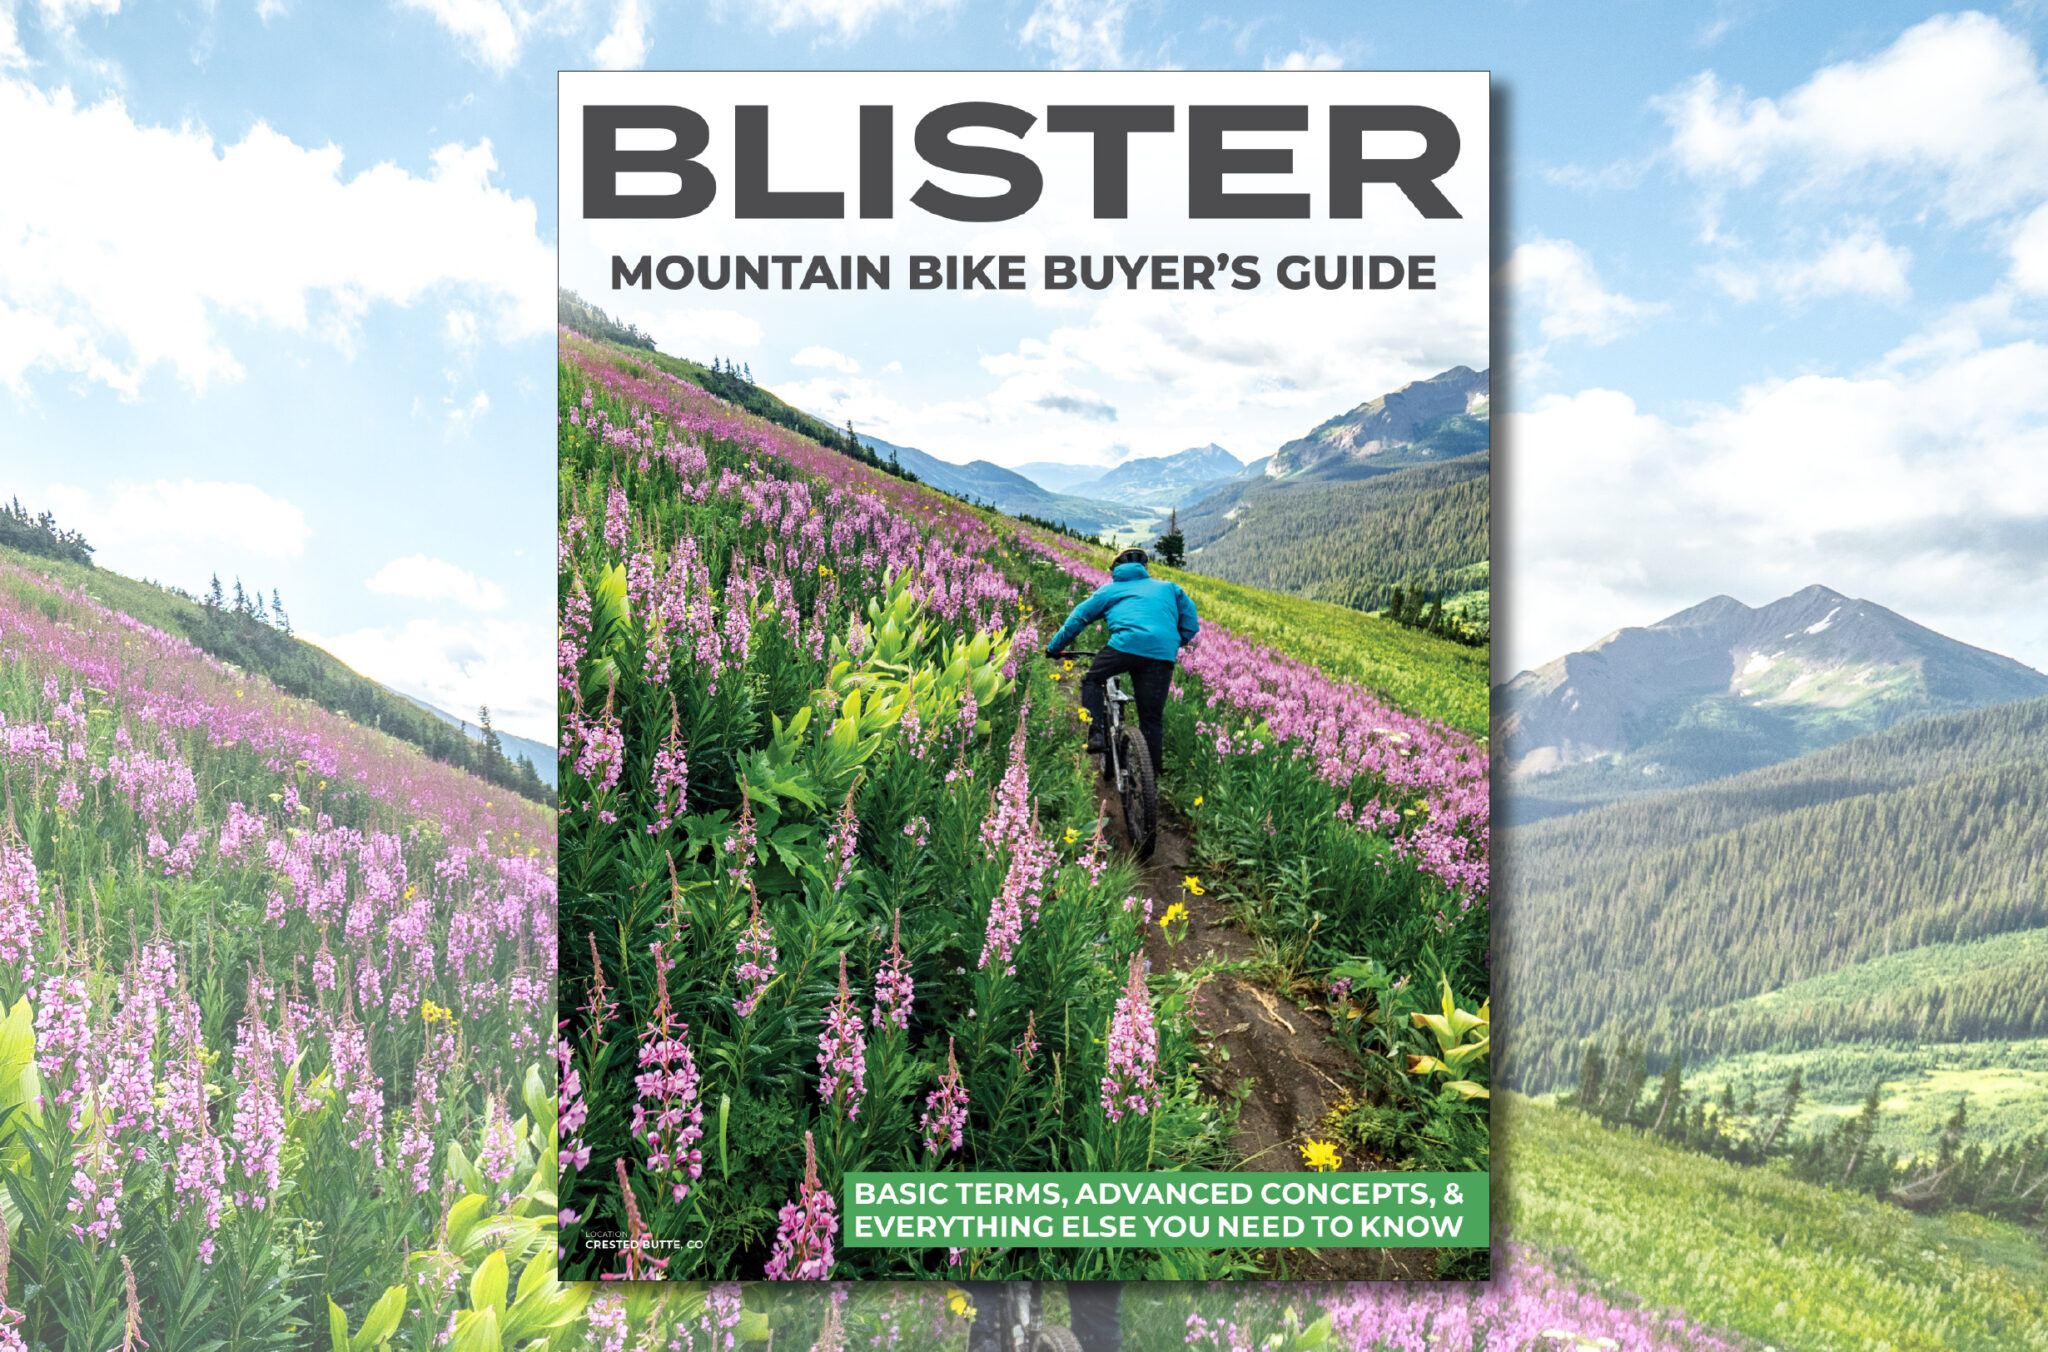 BLISTER Mountain Bike Buyer's Guide How to Buy a Mountain Bike